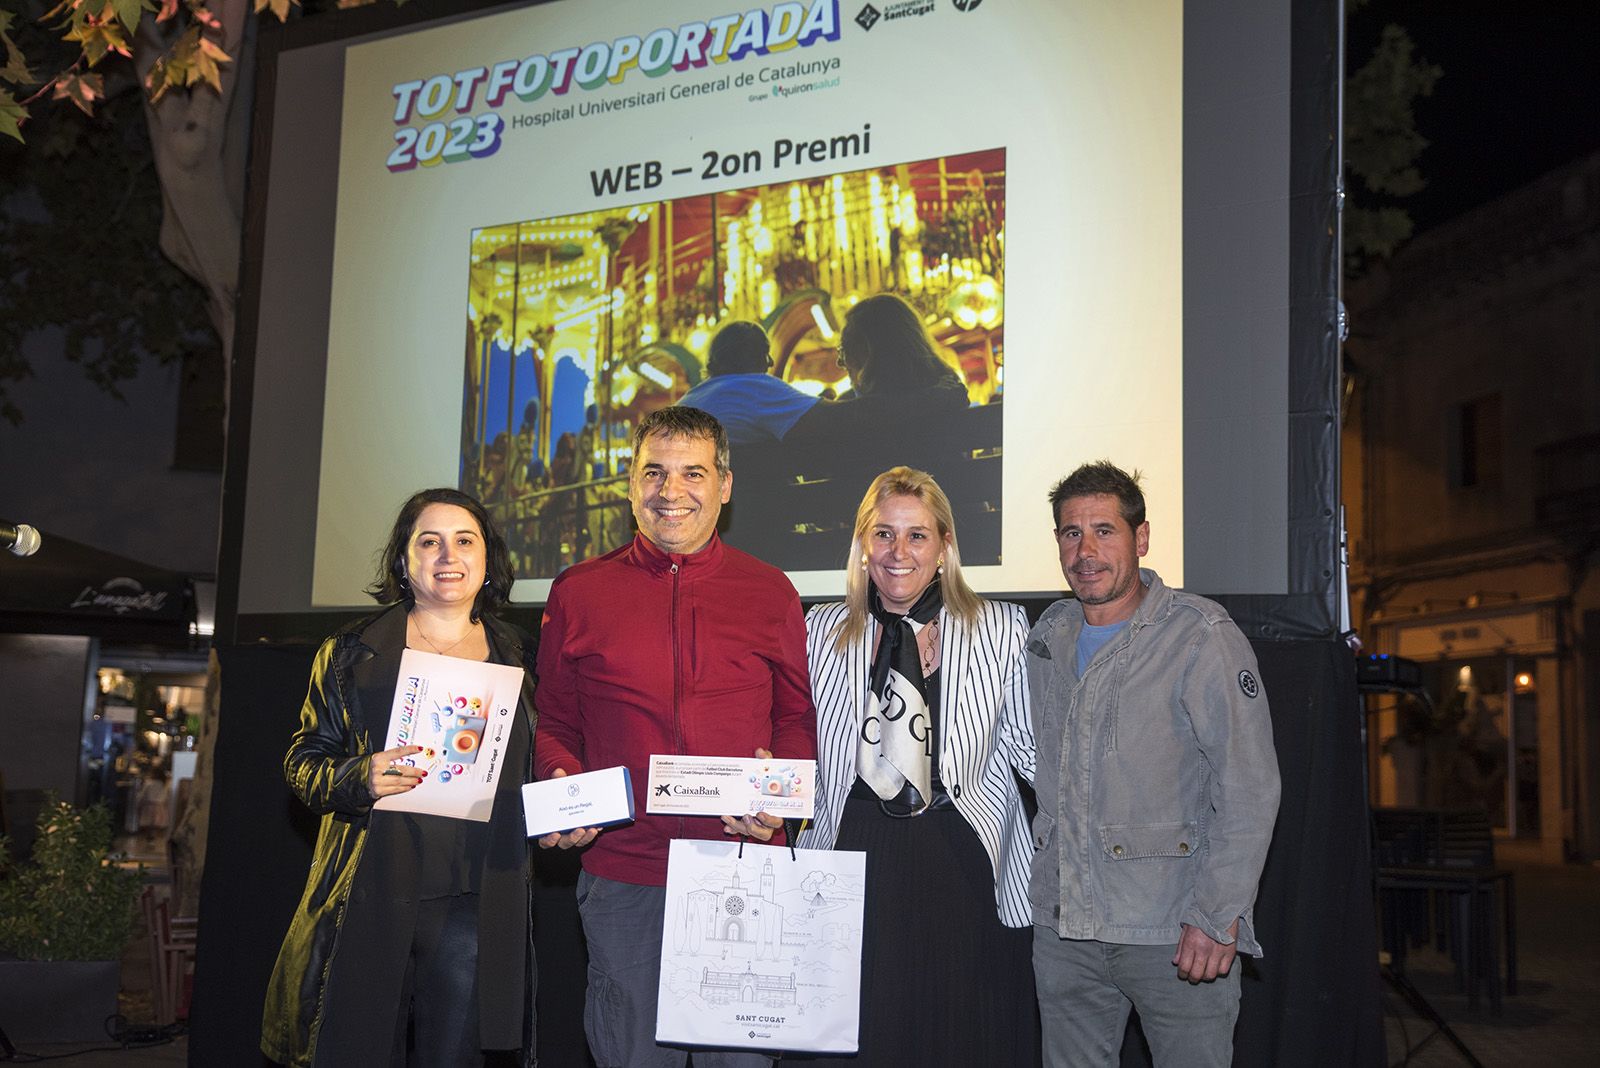 2n premi categoria web: La tercera joventut · Cambrils de Jordi Campos Miralles. FOTO: Bernat Millet.